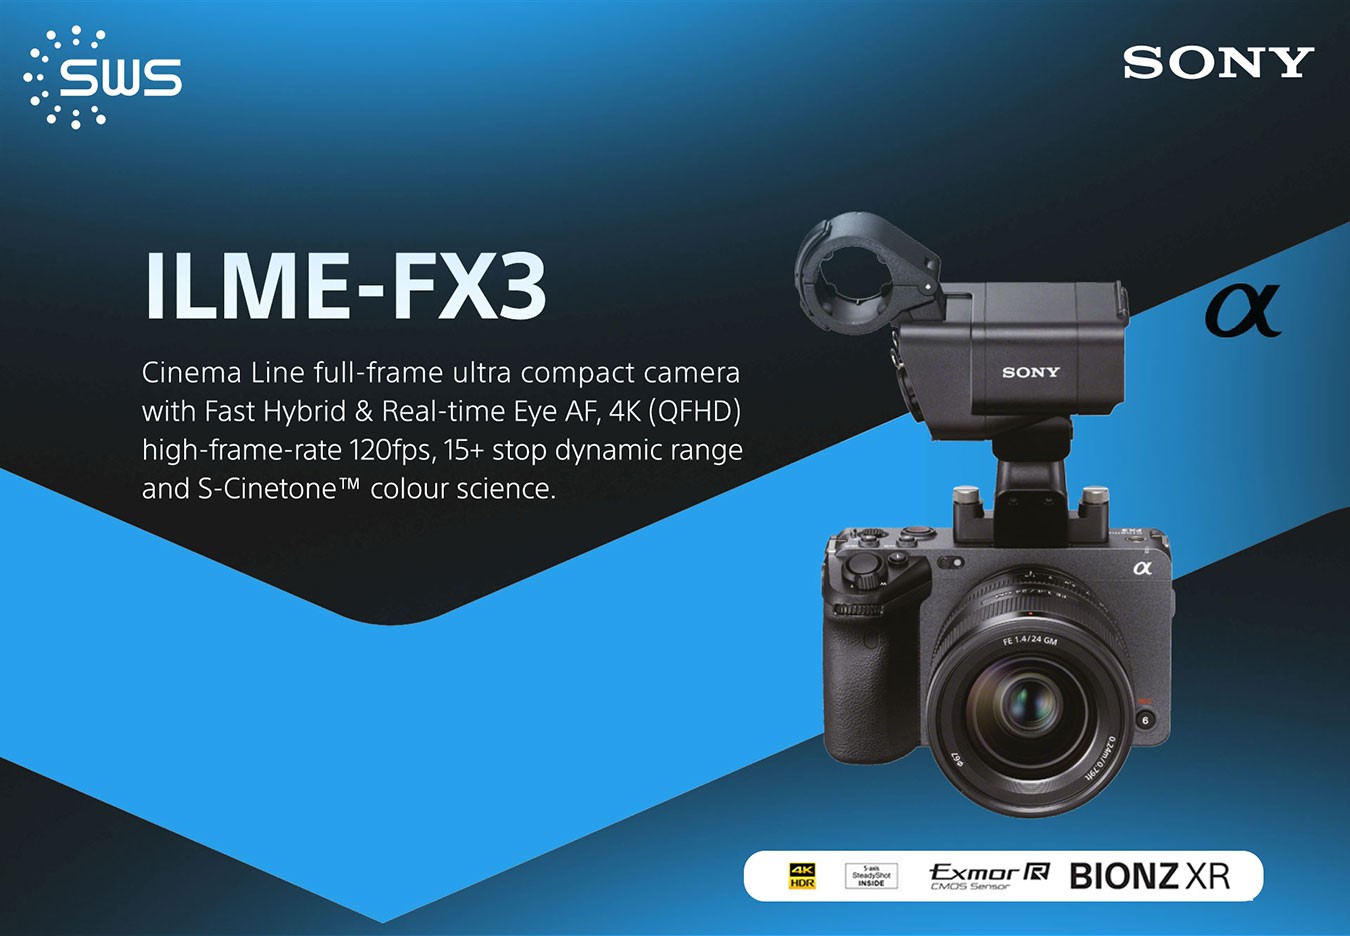  ซื้อ FX3 กับเราสิ! กล้อง Full-Frame น้องเล็กจากตระกูล Cinema Line